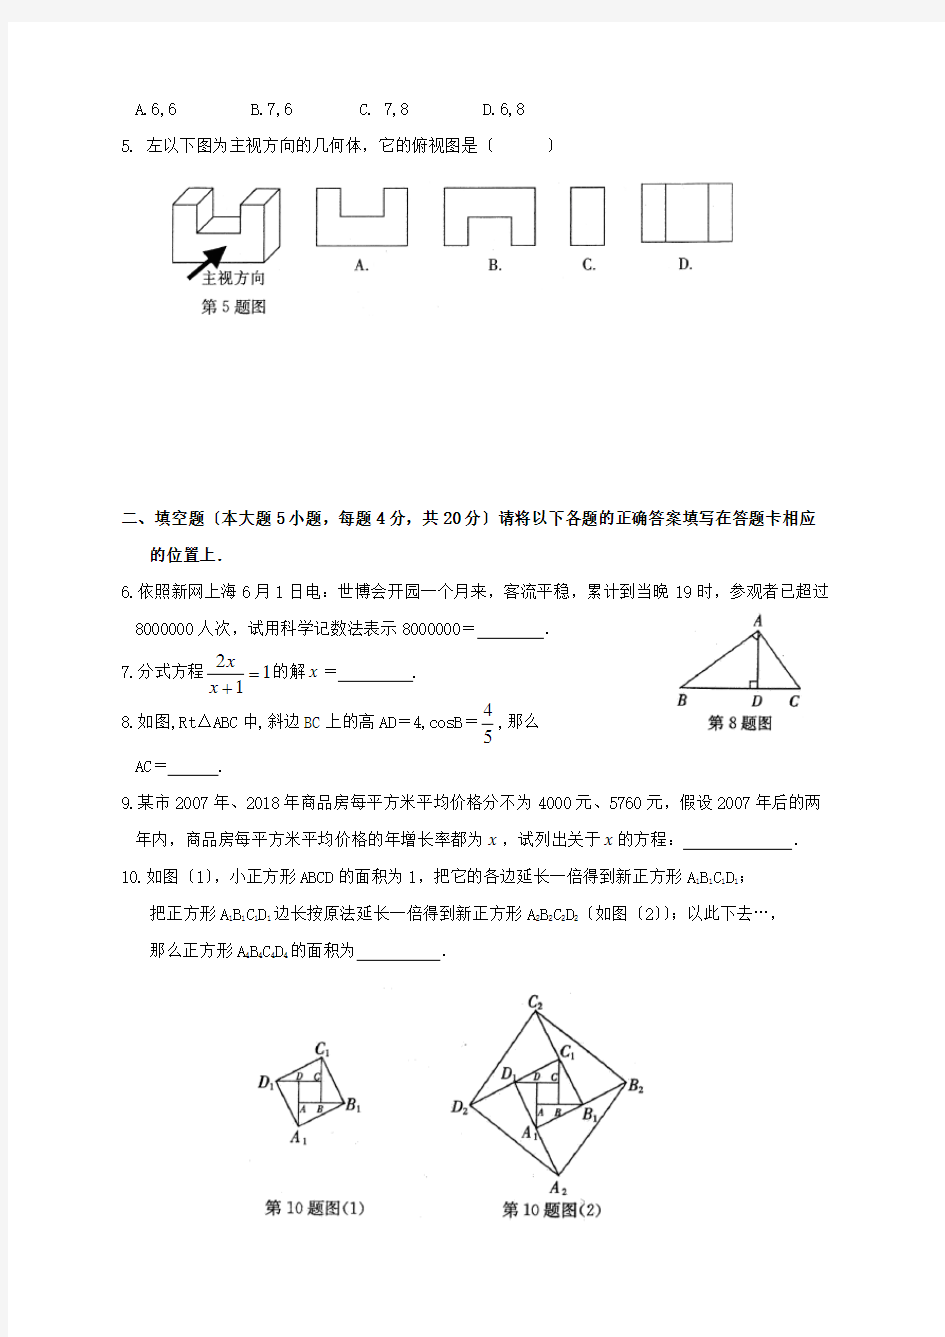 2020年全国各地中考数学试题120套(上)打包下载广东